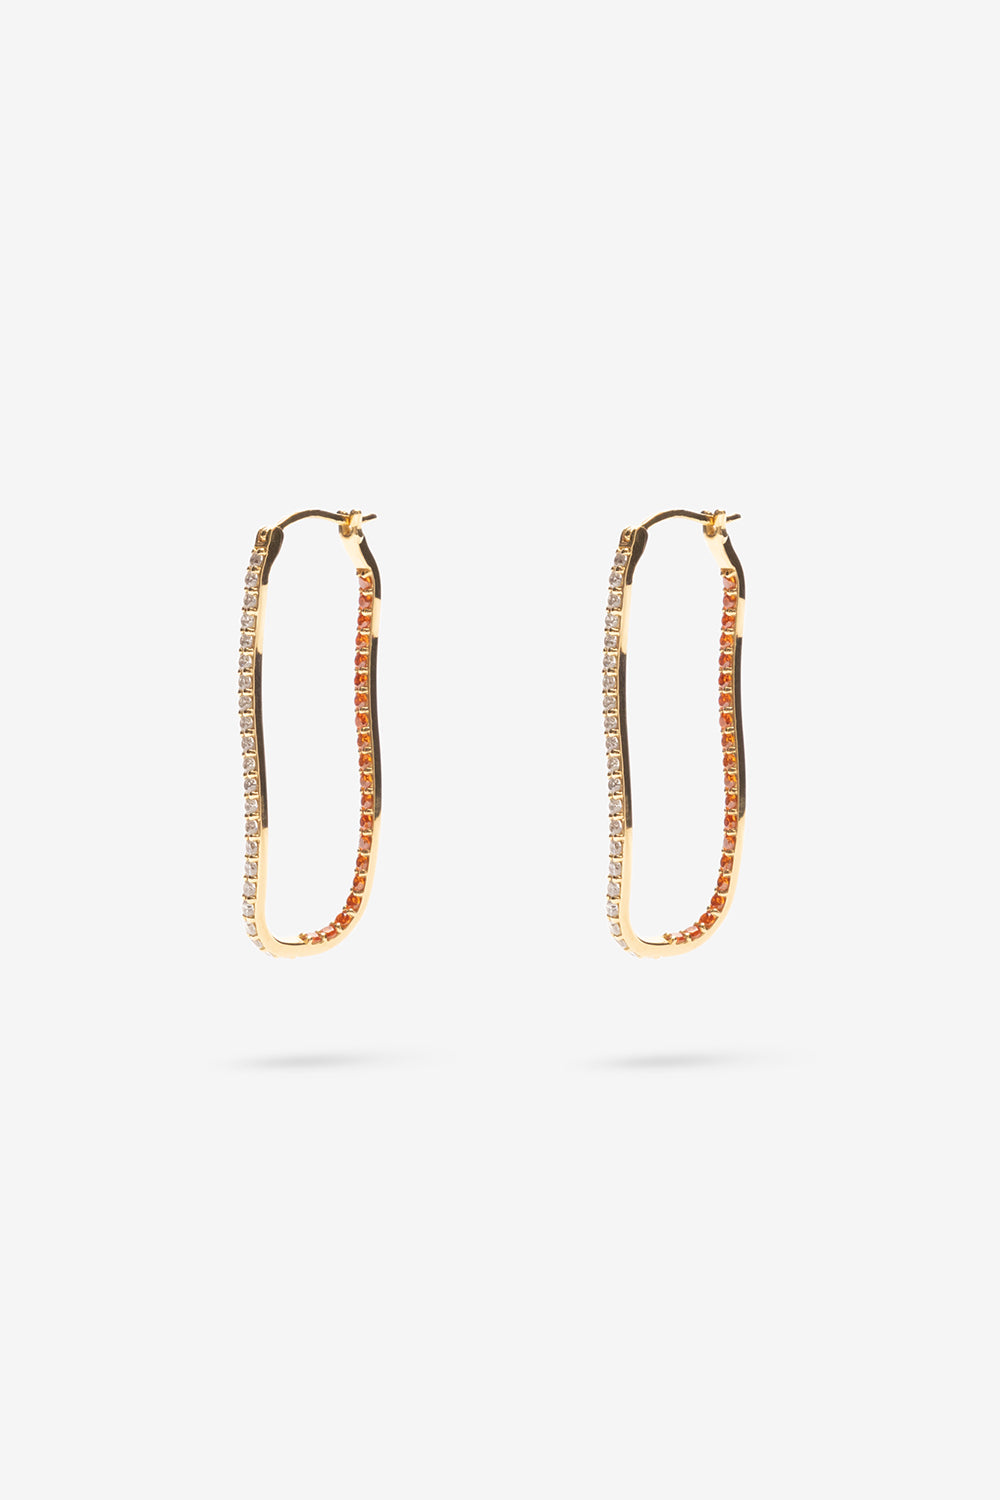 Flash Jewellery Fiasco Paved Hoop Earrings with Tangerine Gemstones in 14k Gold Vermeil